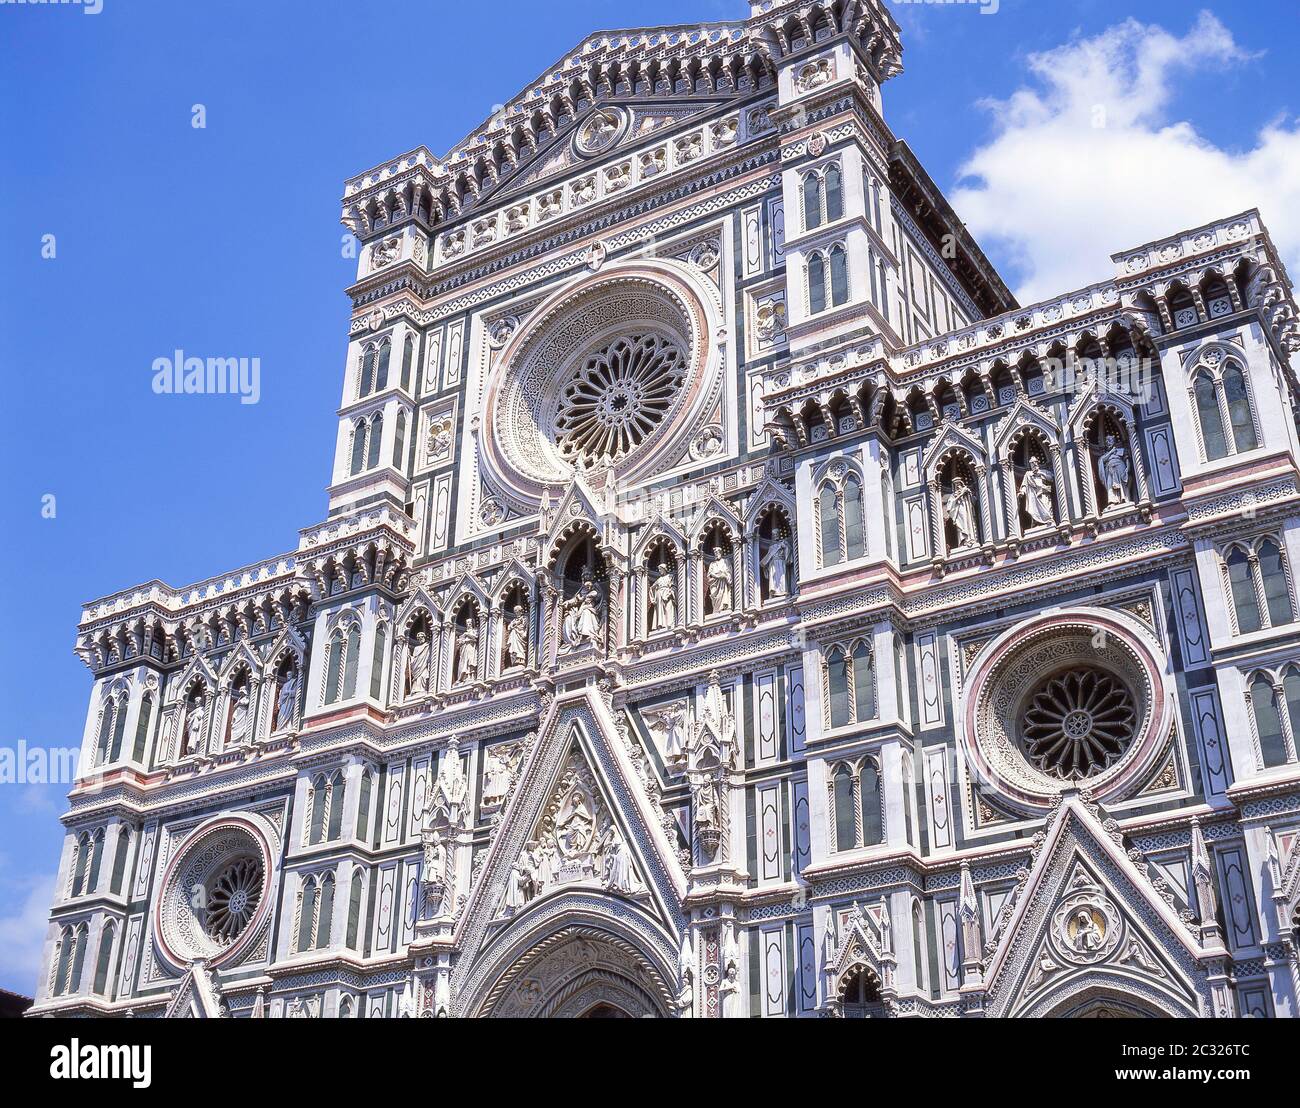 Eingangsfassade der Kathedrale Santa Maria del Fiore (Duomo), Piazza del Duomo, Florenz (Firenze), Toskana Region, Italien Stockfoto